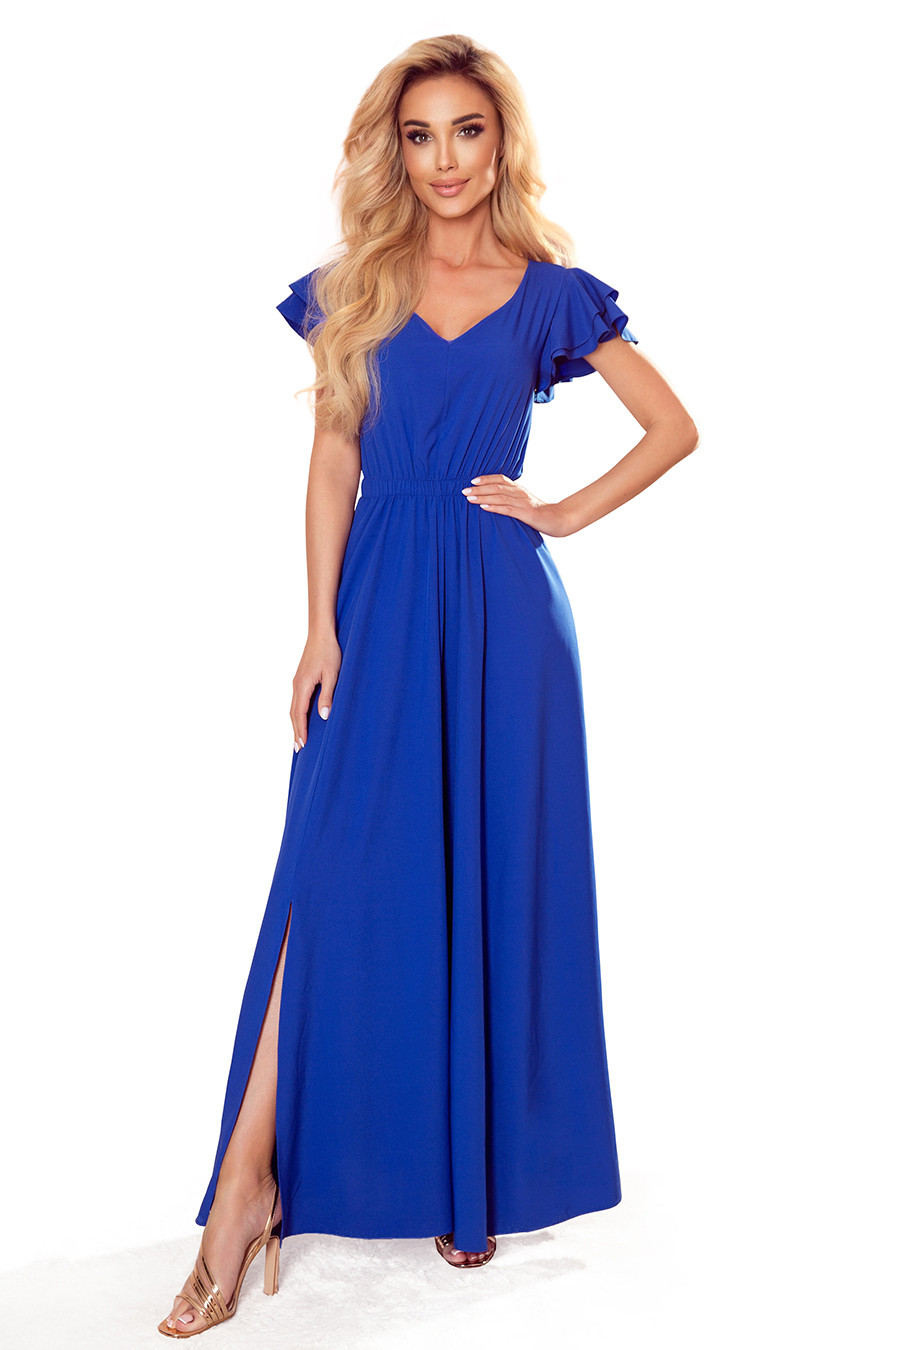 LIDIA - Dlouhé dámské šaty v chrpové barvě s výstřihem a volánky 310-3 L